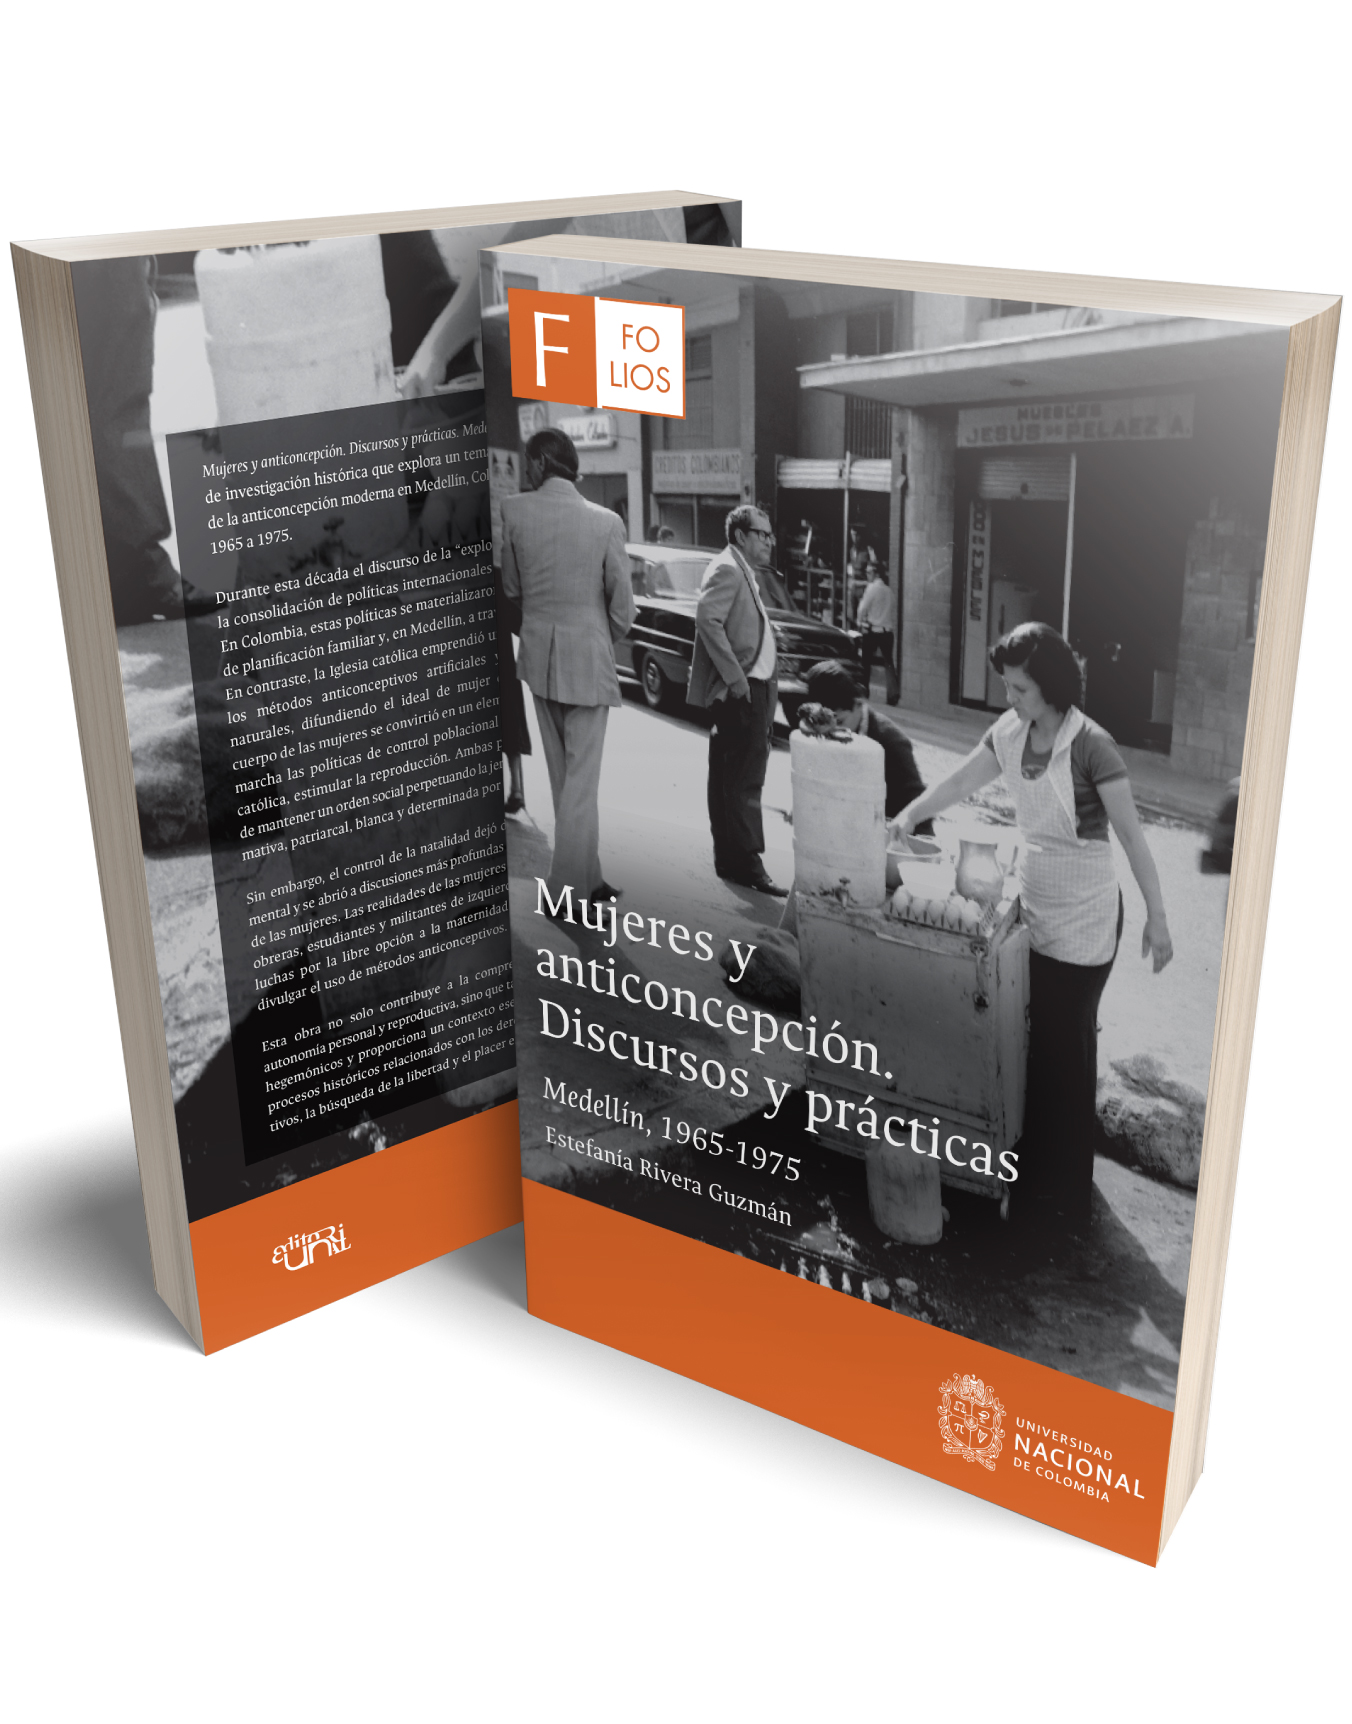 Mujeres y anticoncepción. Discursos y prácticas. Medellín 1965-1975 